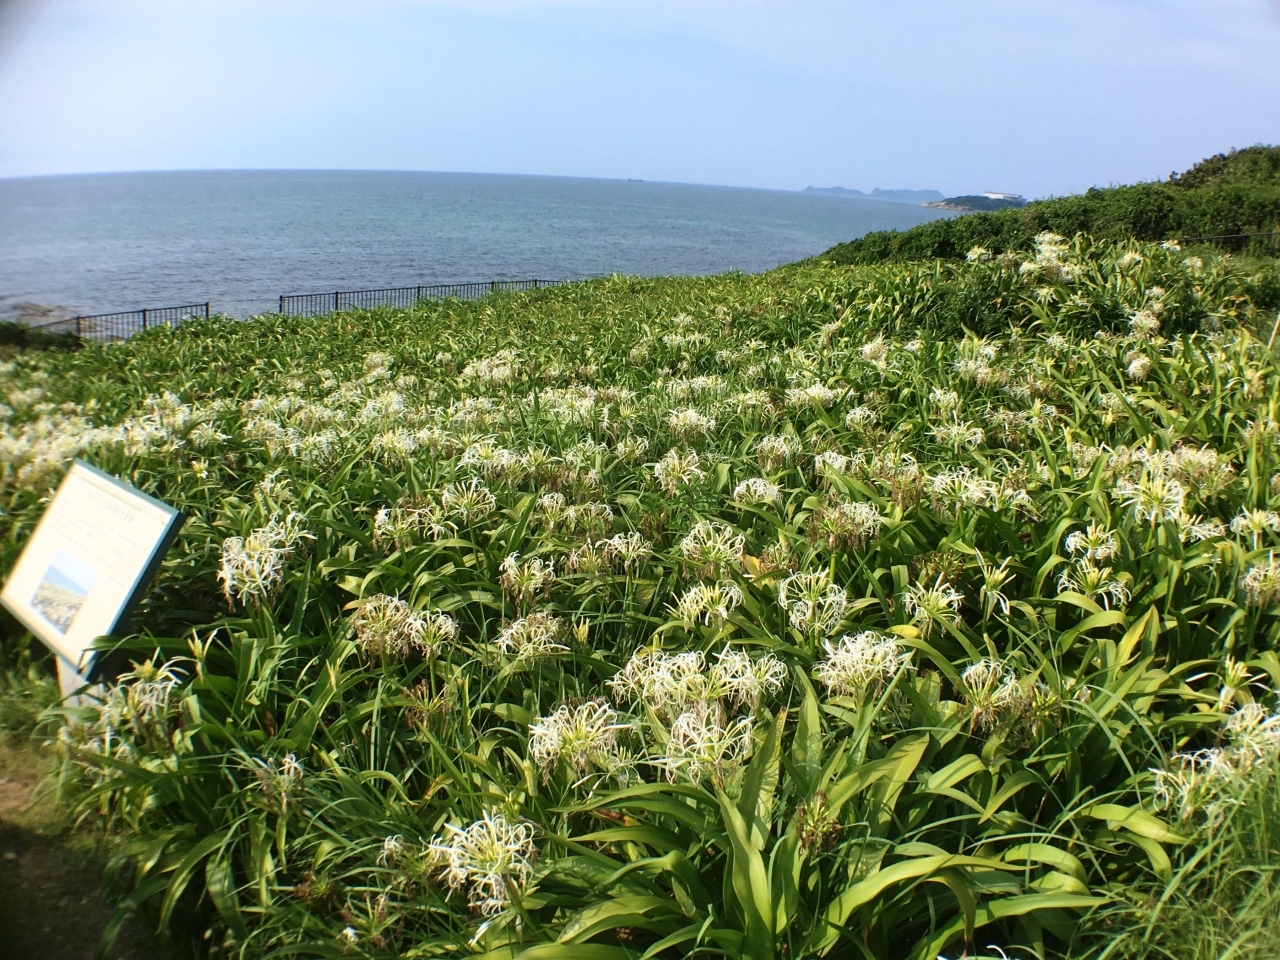 夏井ヶ浜のはまゆう群生地です。

南方の花で、7月・8月が見ごろで、ちょうど咲いていました。